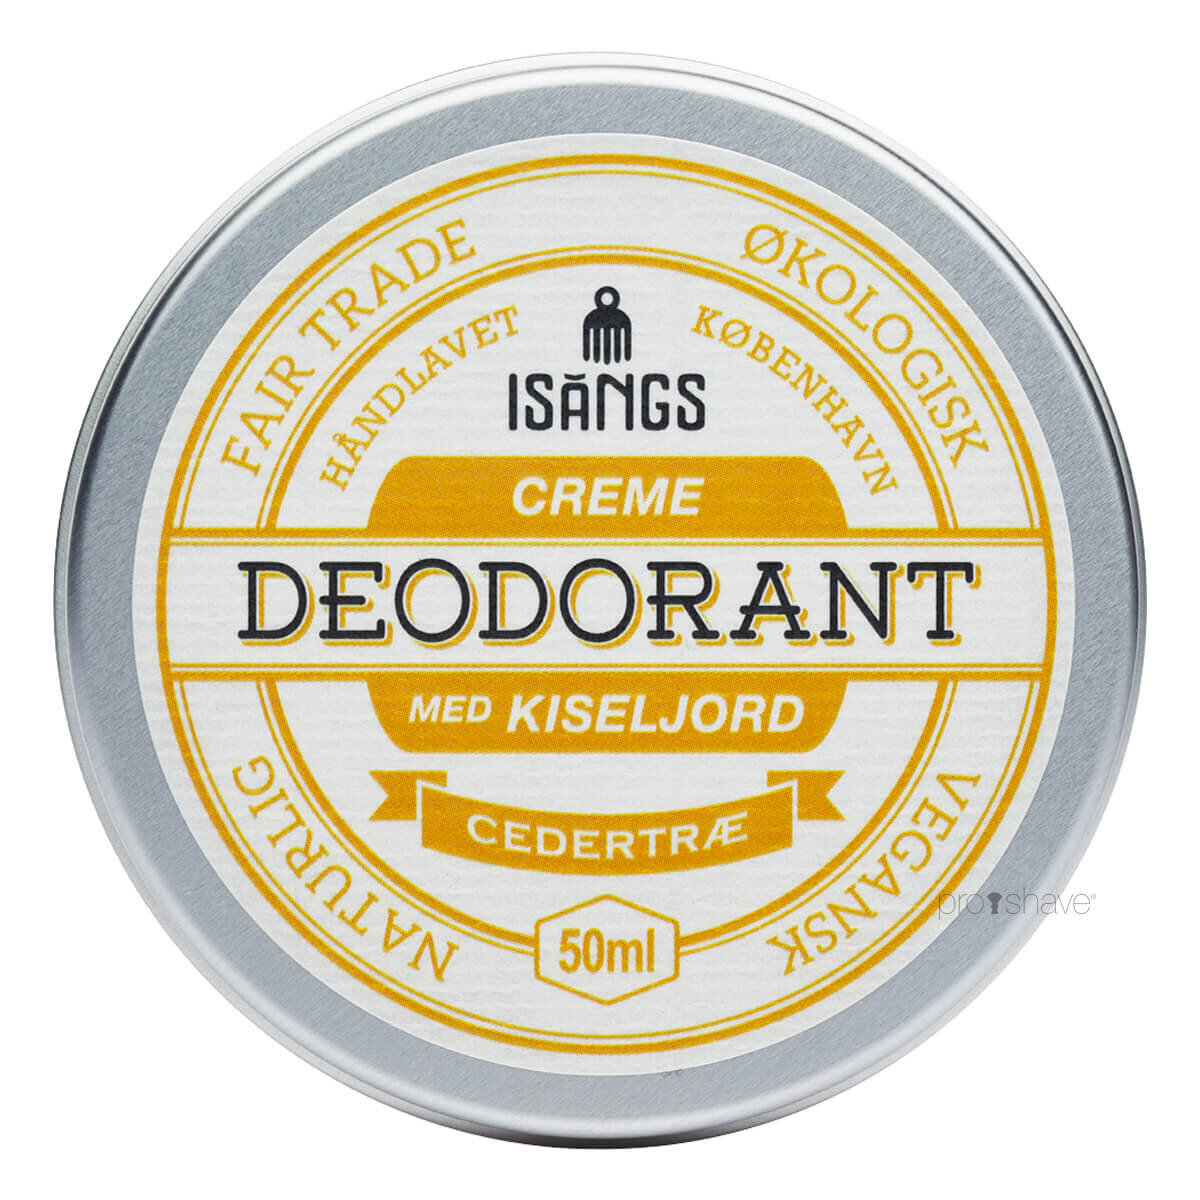 Isangs Creme Deodorant med Kiseljord, Cedertræ, 50 ml.